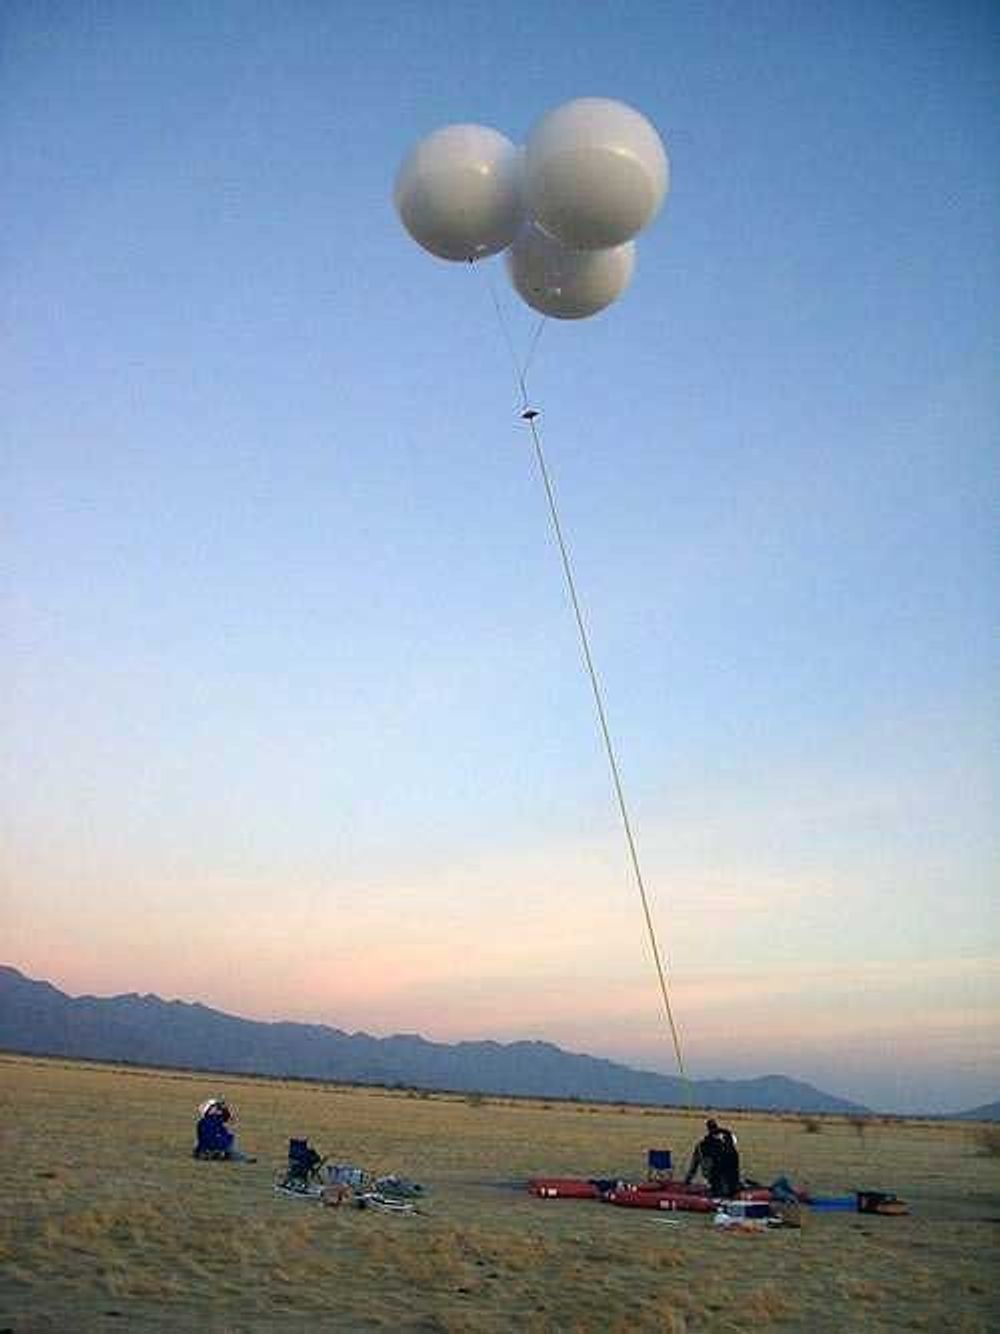 historiens første "nanoheis" ble løftet til værs av tre ballonger. LiftPort lykkes å sende en liten heis 300 meter oppover det 1,6 km lange karbonreipet.